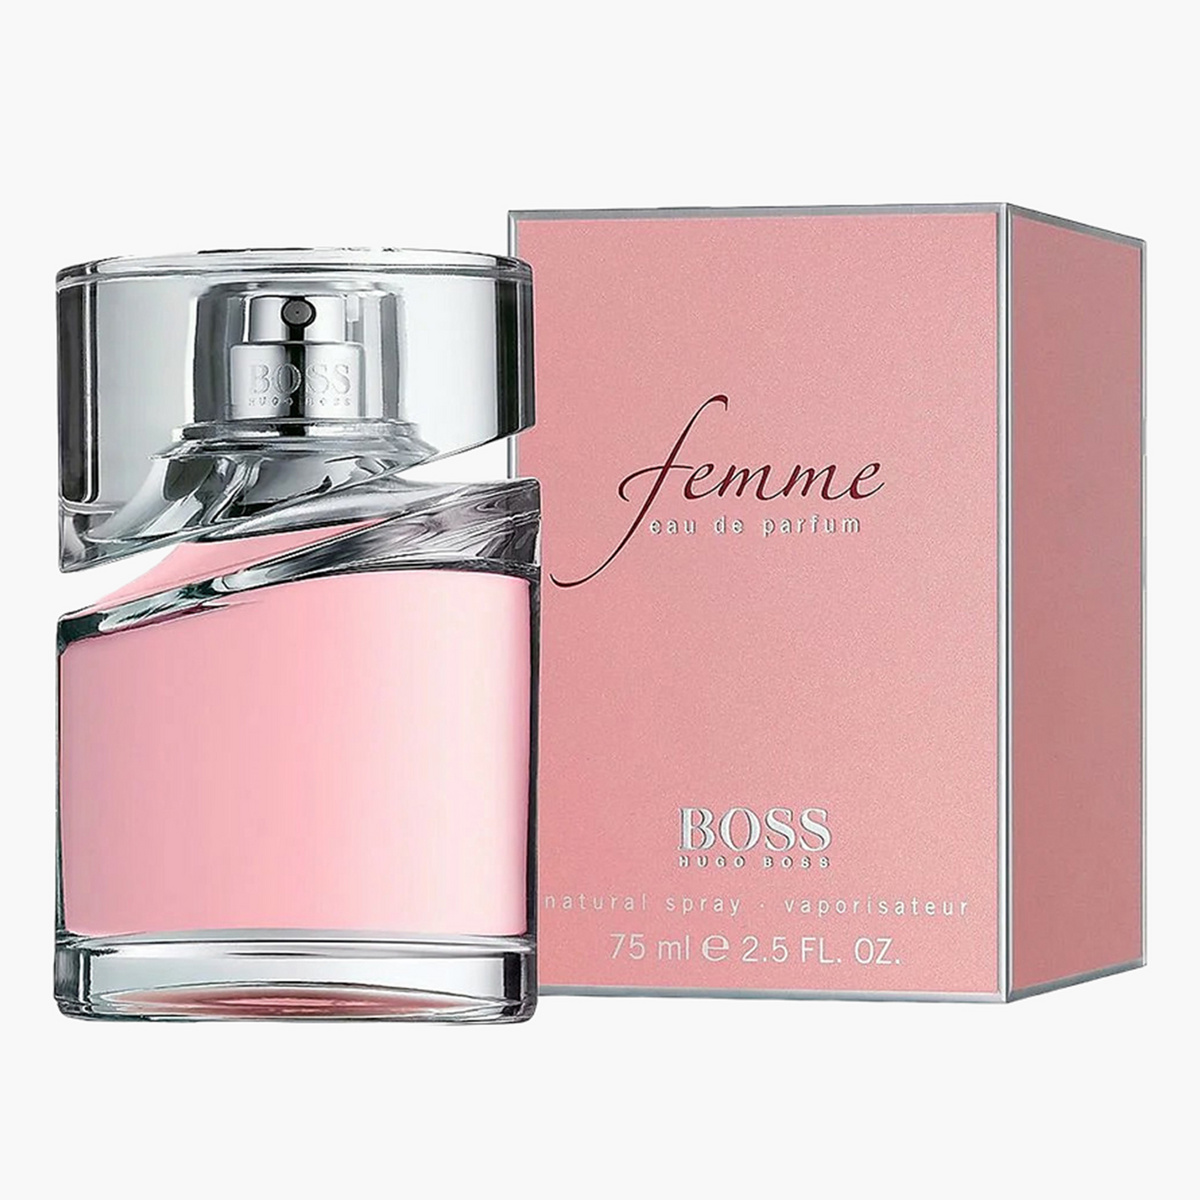 Hugo Boss Femme Eau De Parfum for Women - 75 ml